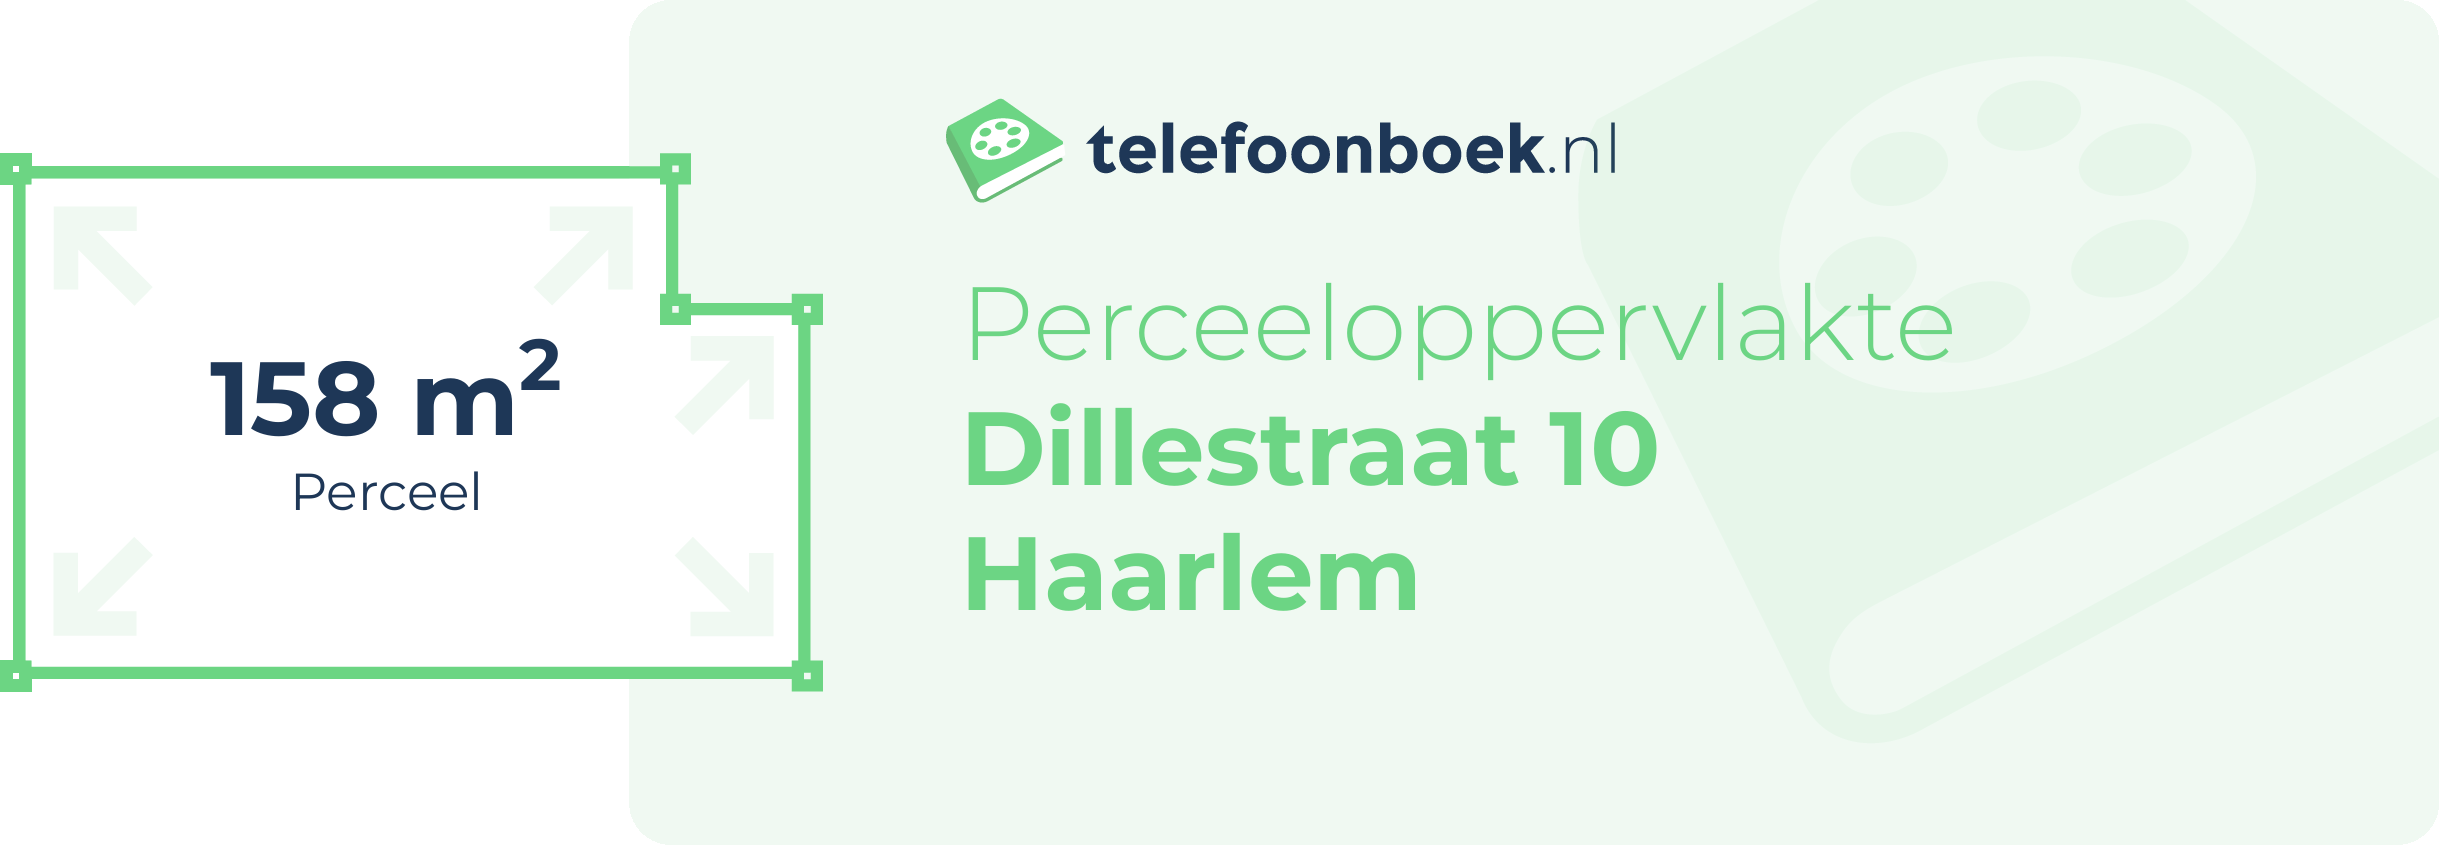 Perceeloppervlakte Dillestraat 10 Haarlem